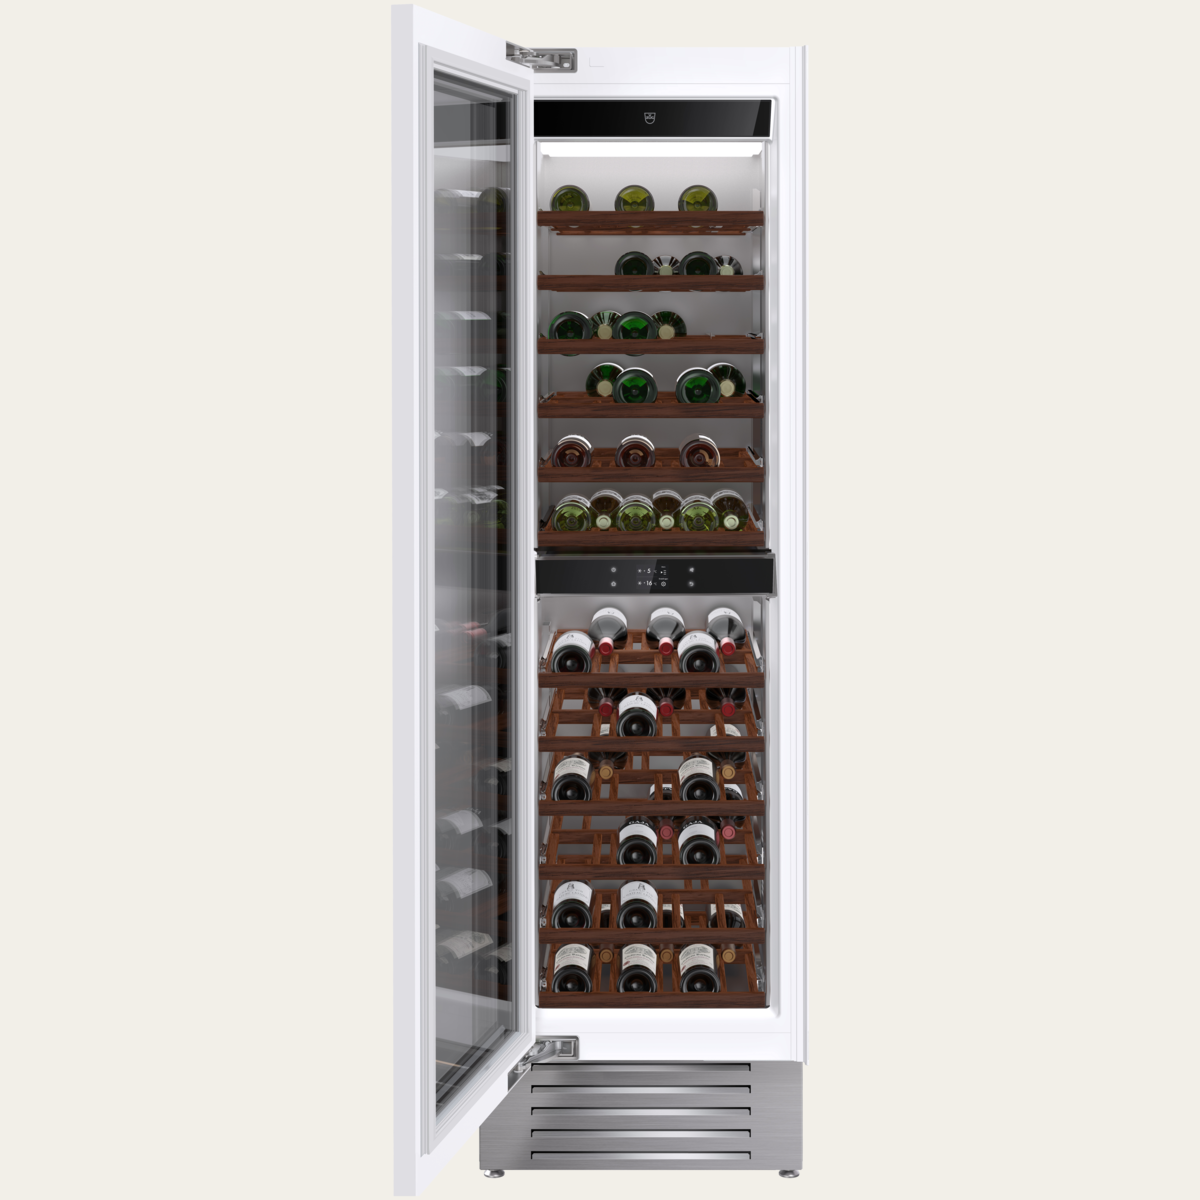 V-ZUG Refrigerator/freezer WineCooler V6000 Supreme, Standard width: 60 cm, Standard height: 205 cm, Fullyintegratable, Door hinge: Left, Energyefficiency rating: G, TouchControl